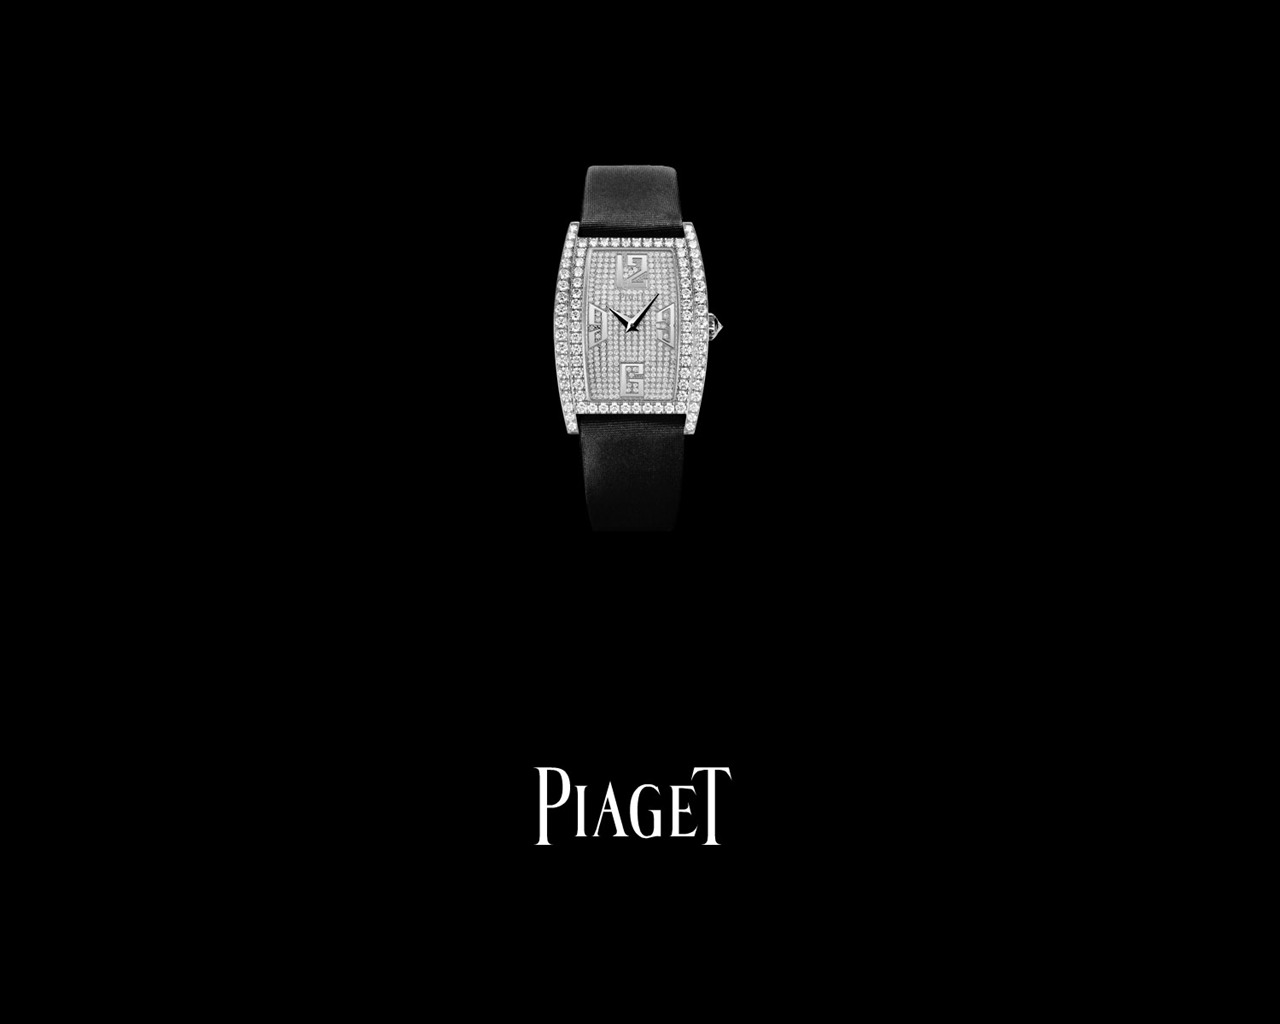 Piaget Diamante fondos de escritorio de reloj (2) #5 - 1280x1024